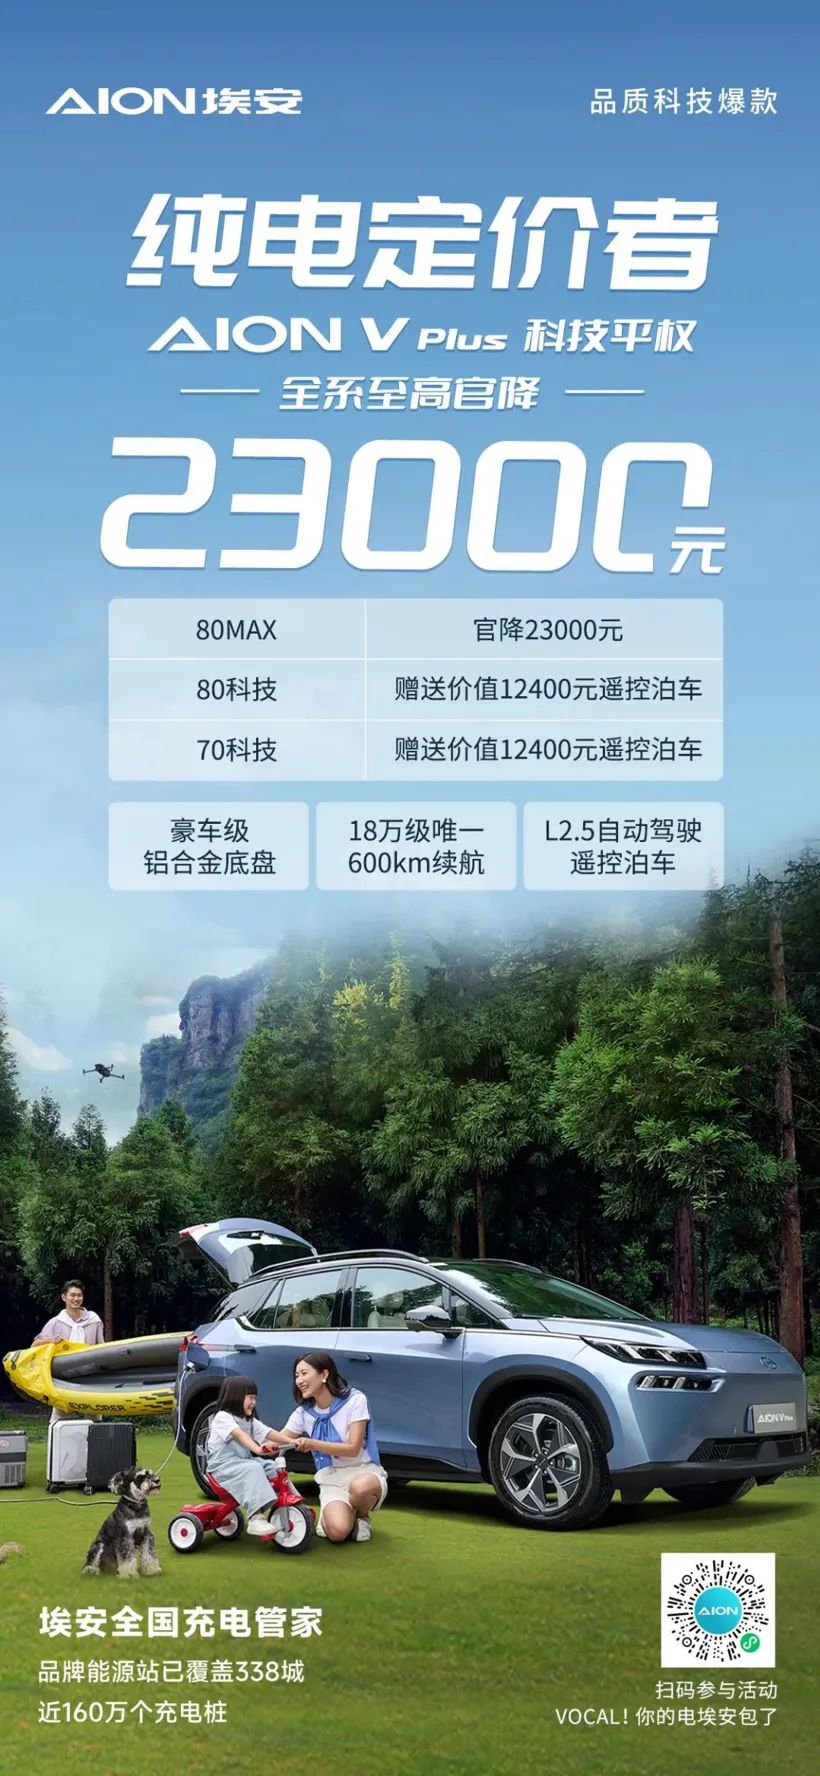 All GAC Aion V Plus Serie si bei RMB 23,000 fir den héchsten offizielle Präis geprägt